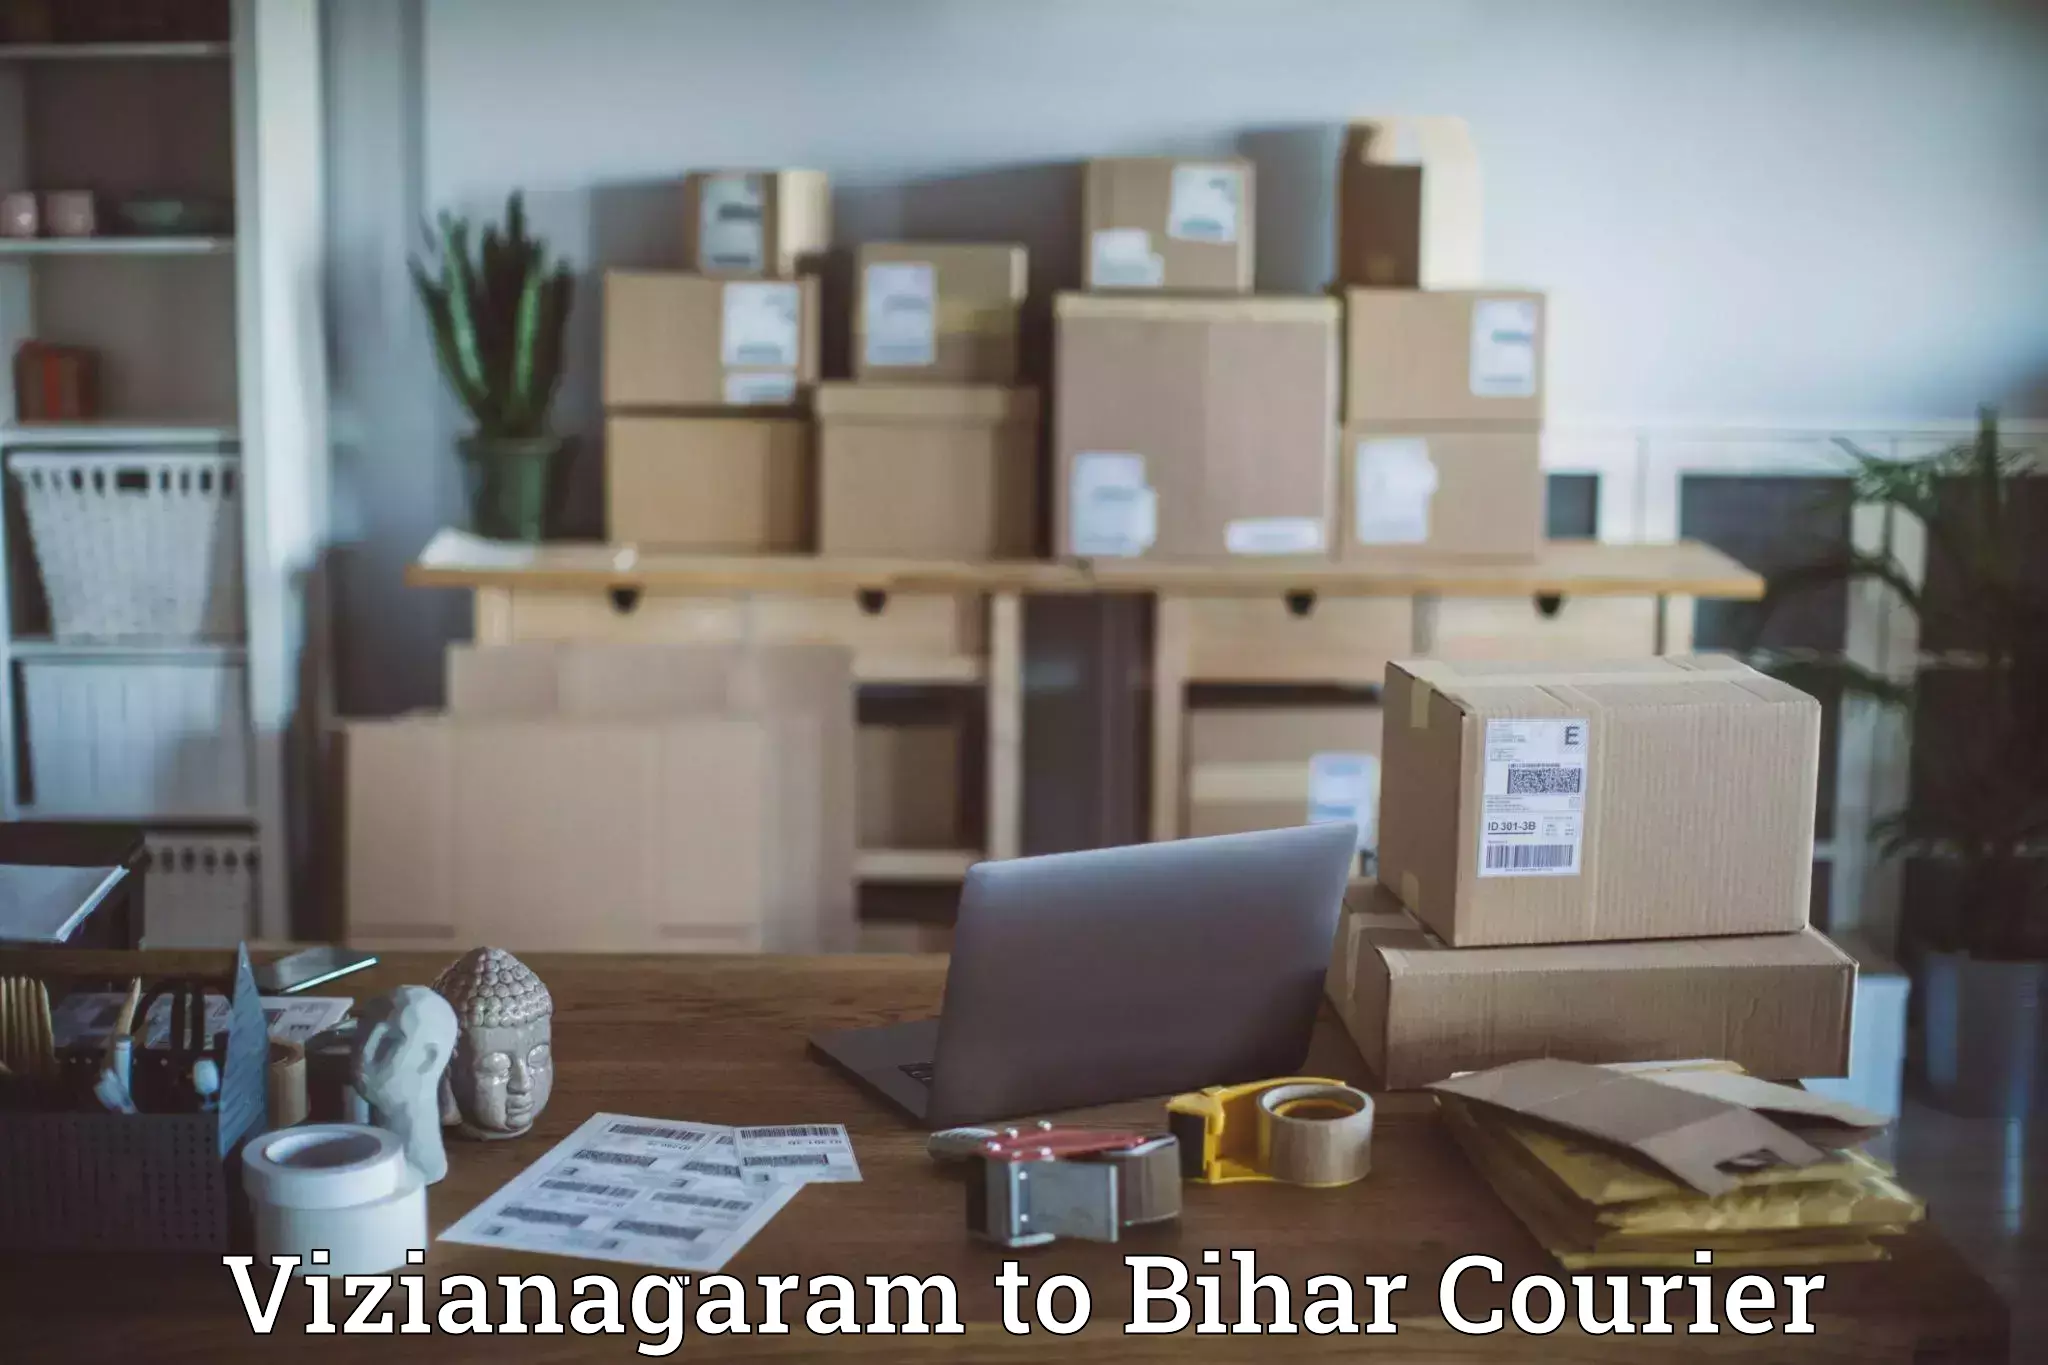 Premium courier services Vizianagaram to Bhagalpur